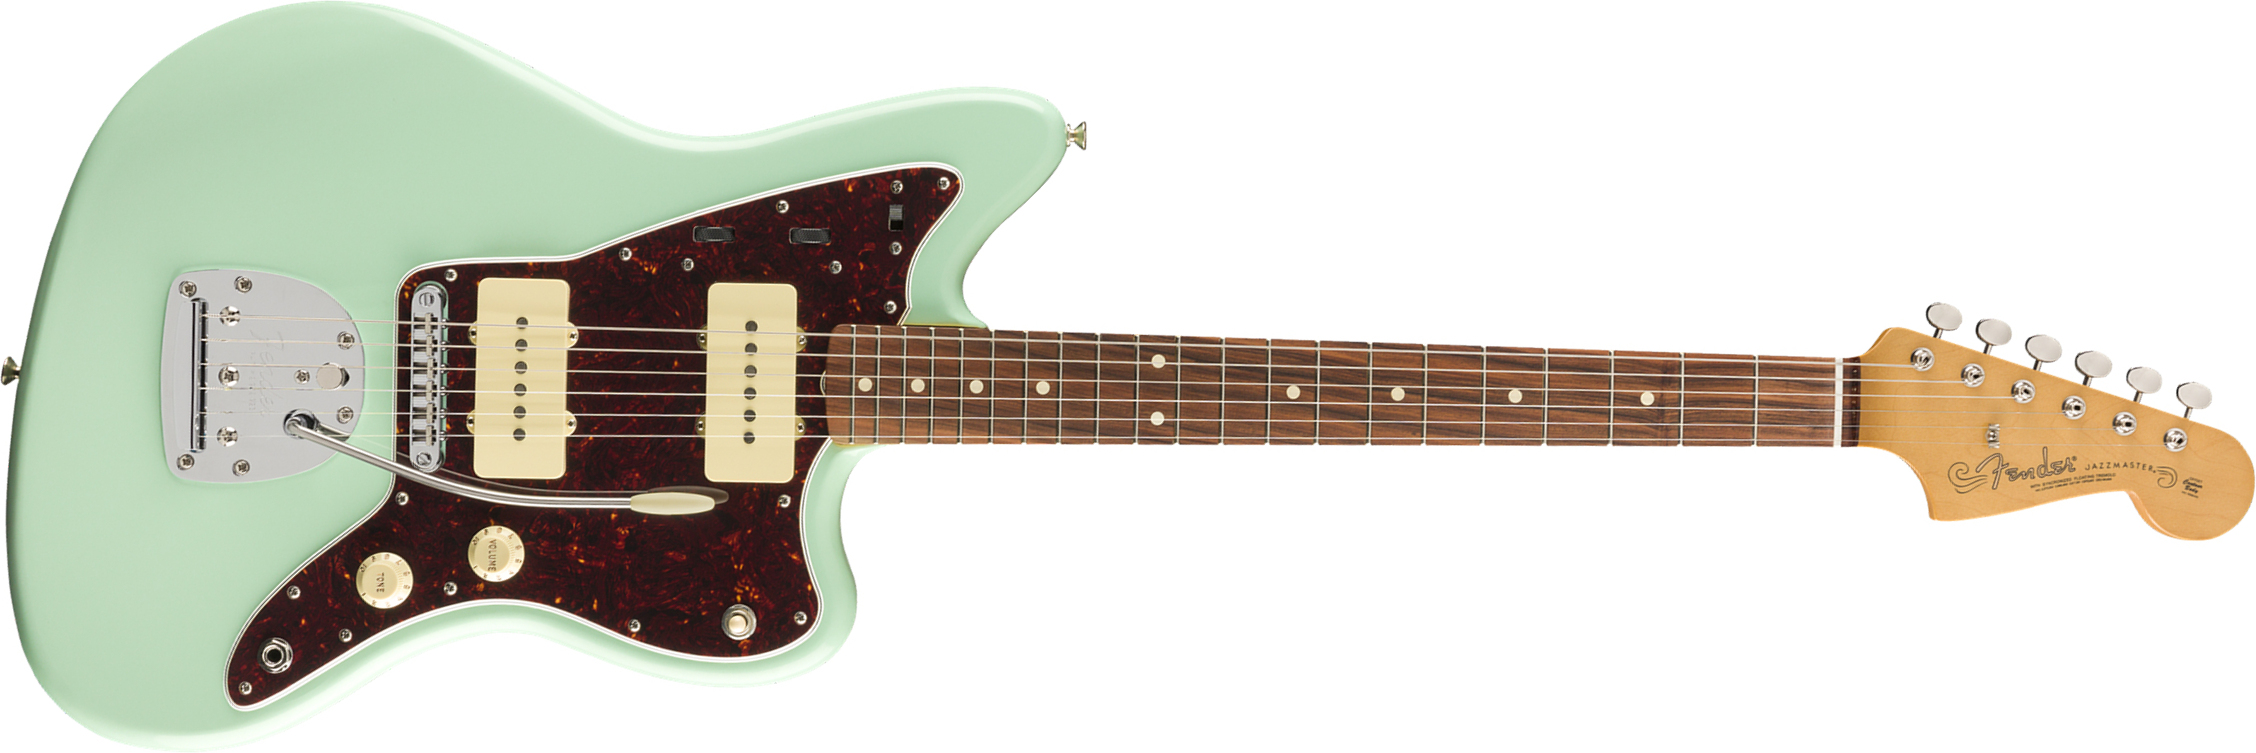 Fender Jazzmaster 60s Vintera Modified Mex Pf - Surf Green - Retro-Rock-E-Gitarre - Main picture